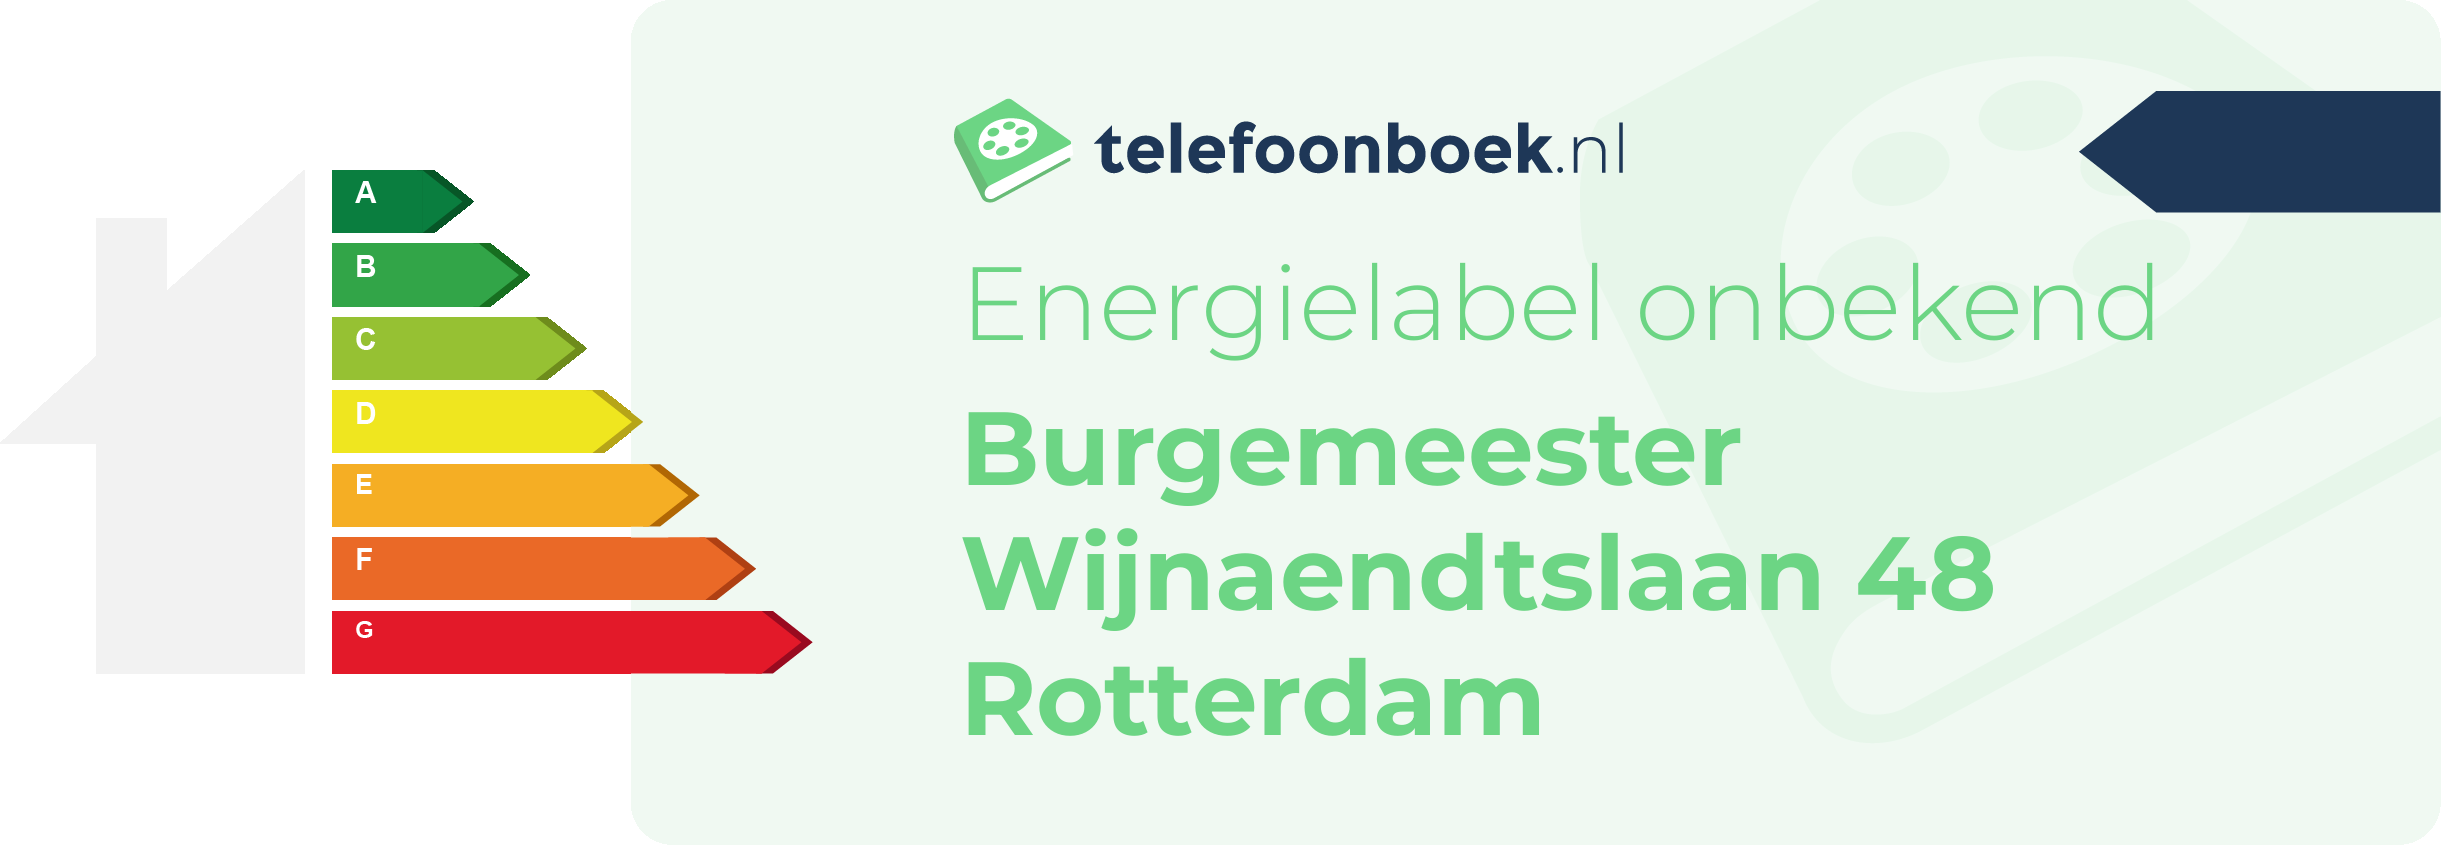 Energielabel Burgemeester Wijnaendtslaan 48 Rotterdam